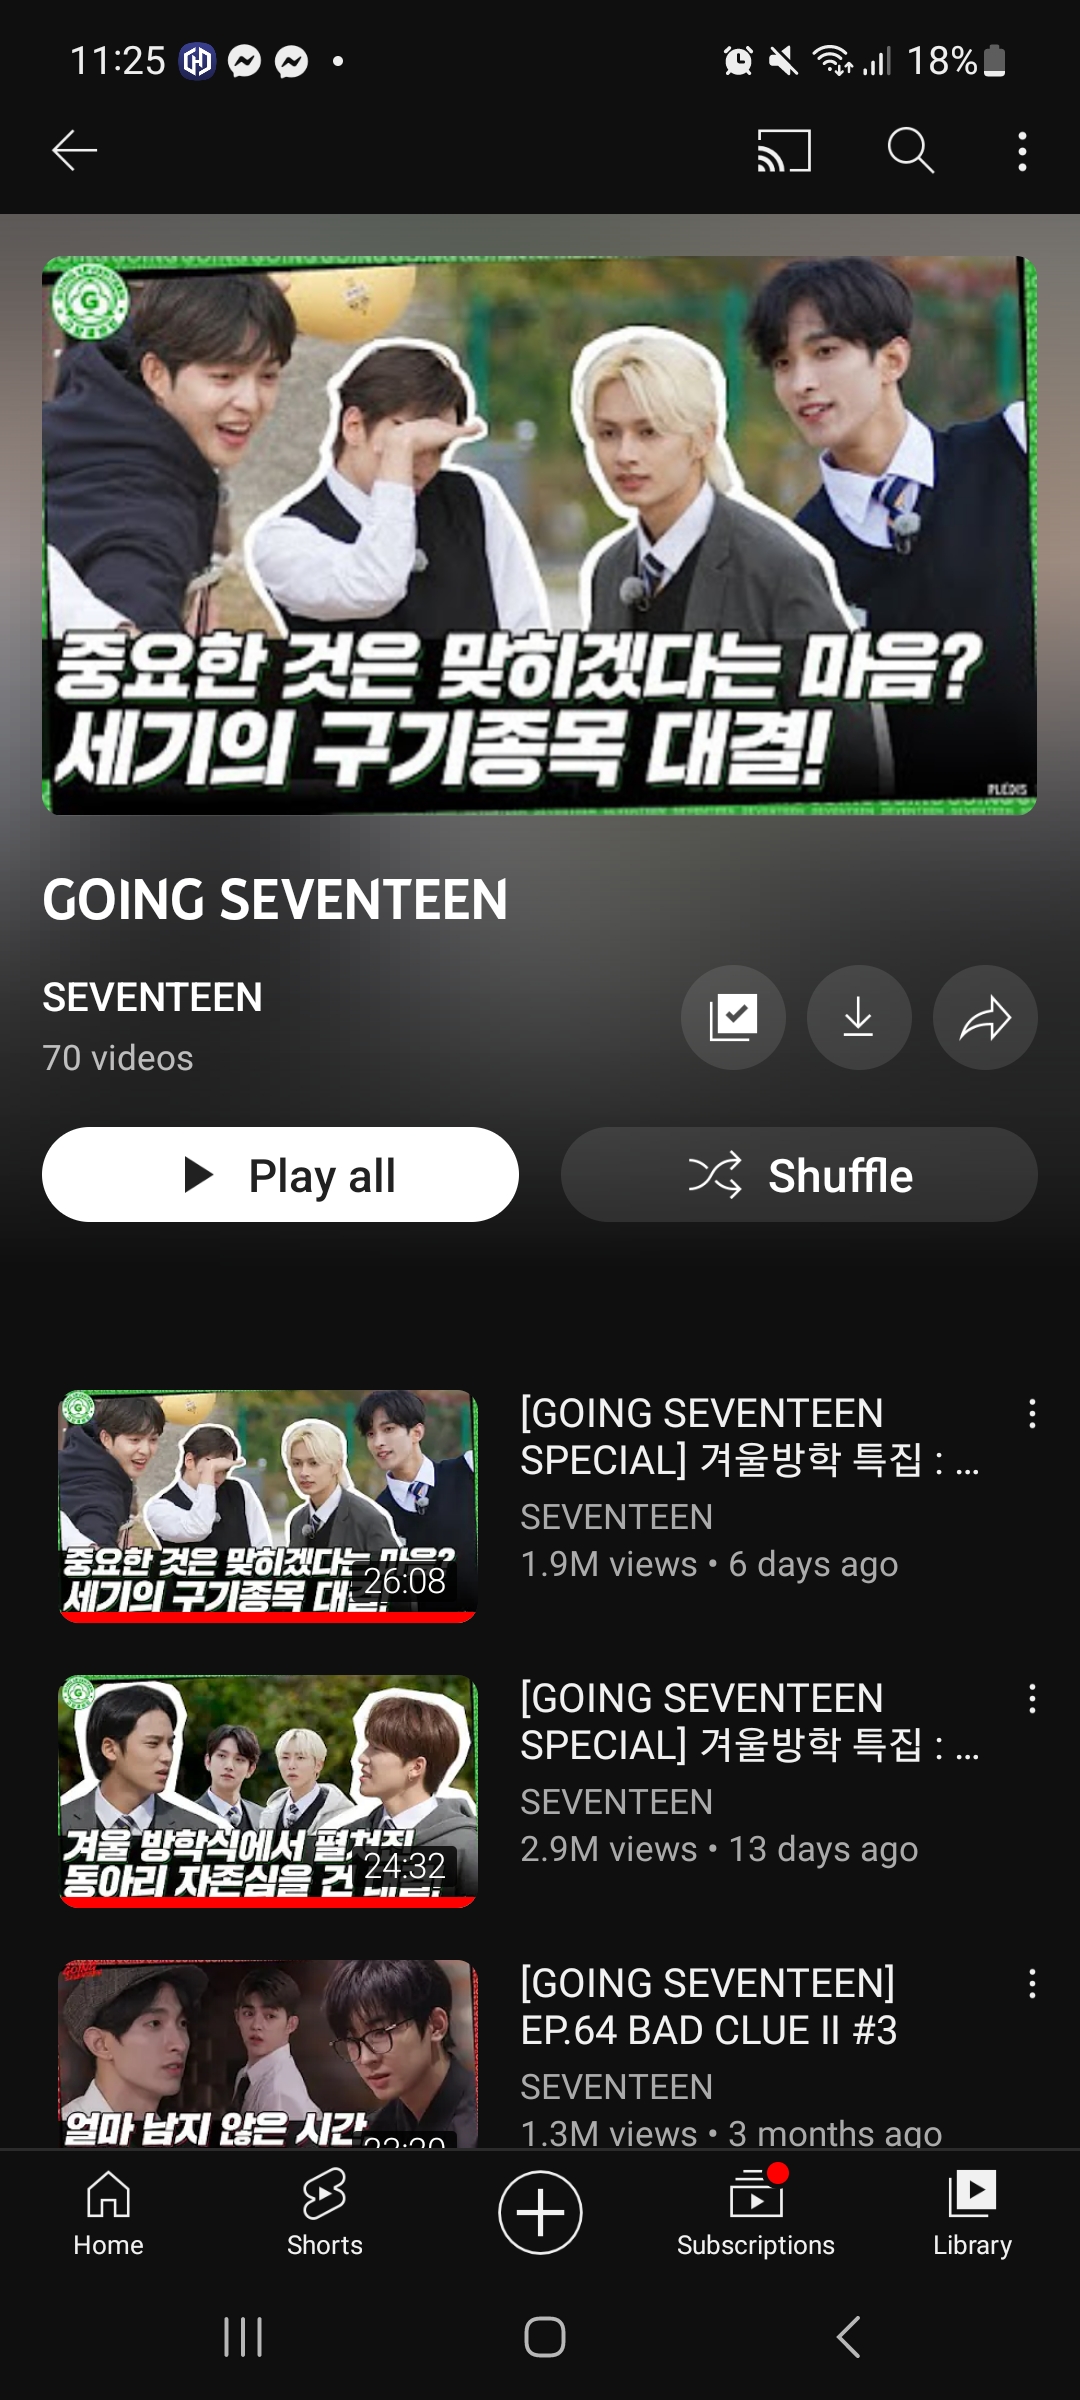 Goung Seventeen Special Ep.66